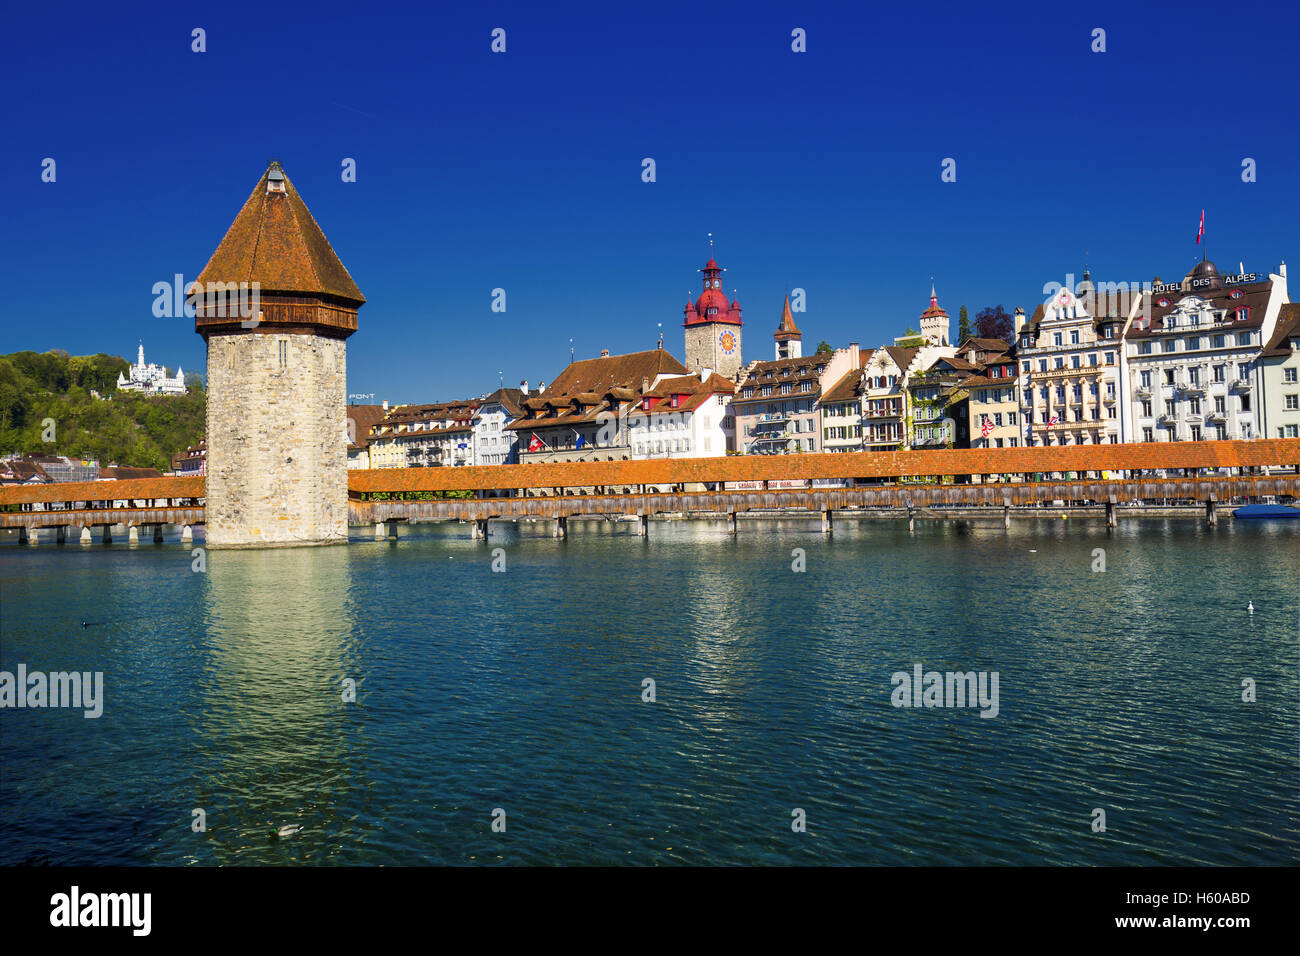 Altstadt von Luzern mit berühmten Kapellbrücke und dem Vierwaldstättersee (Vierwaldstatersee), Kanton Luzern, Schweiz Stockfoto